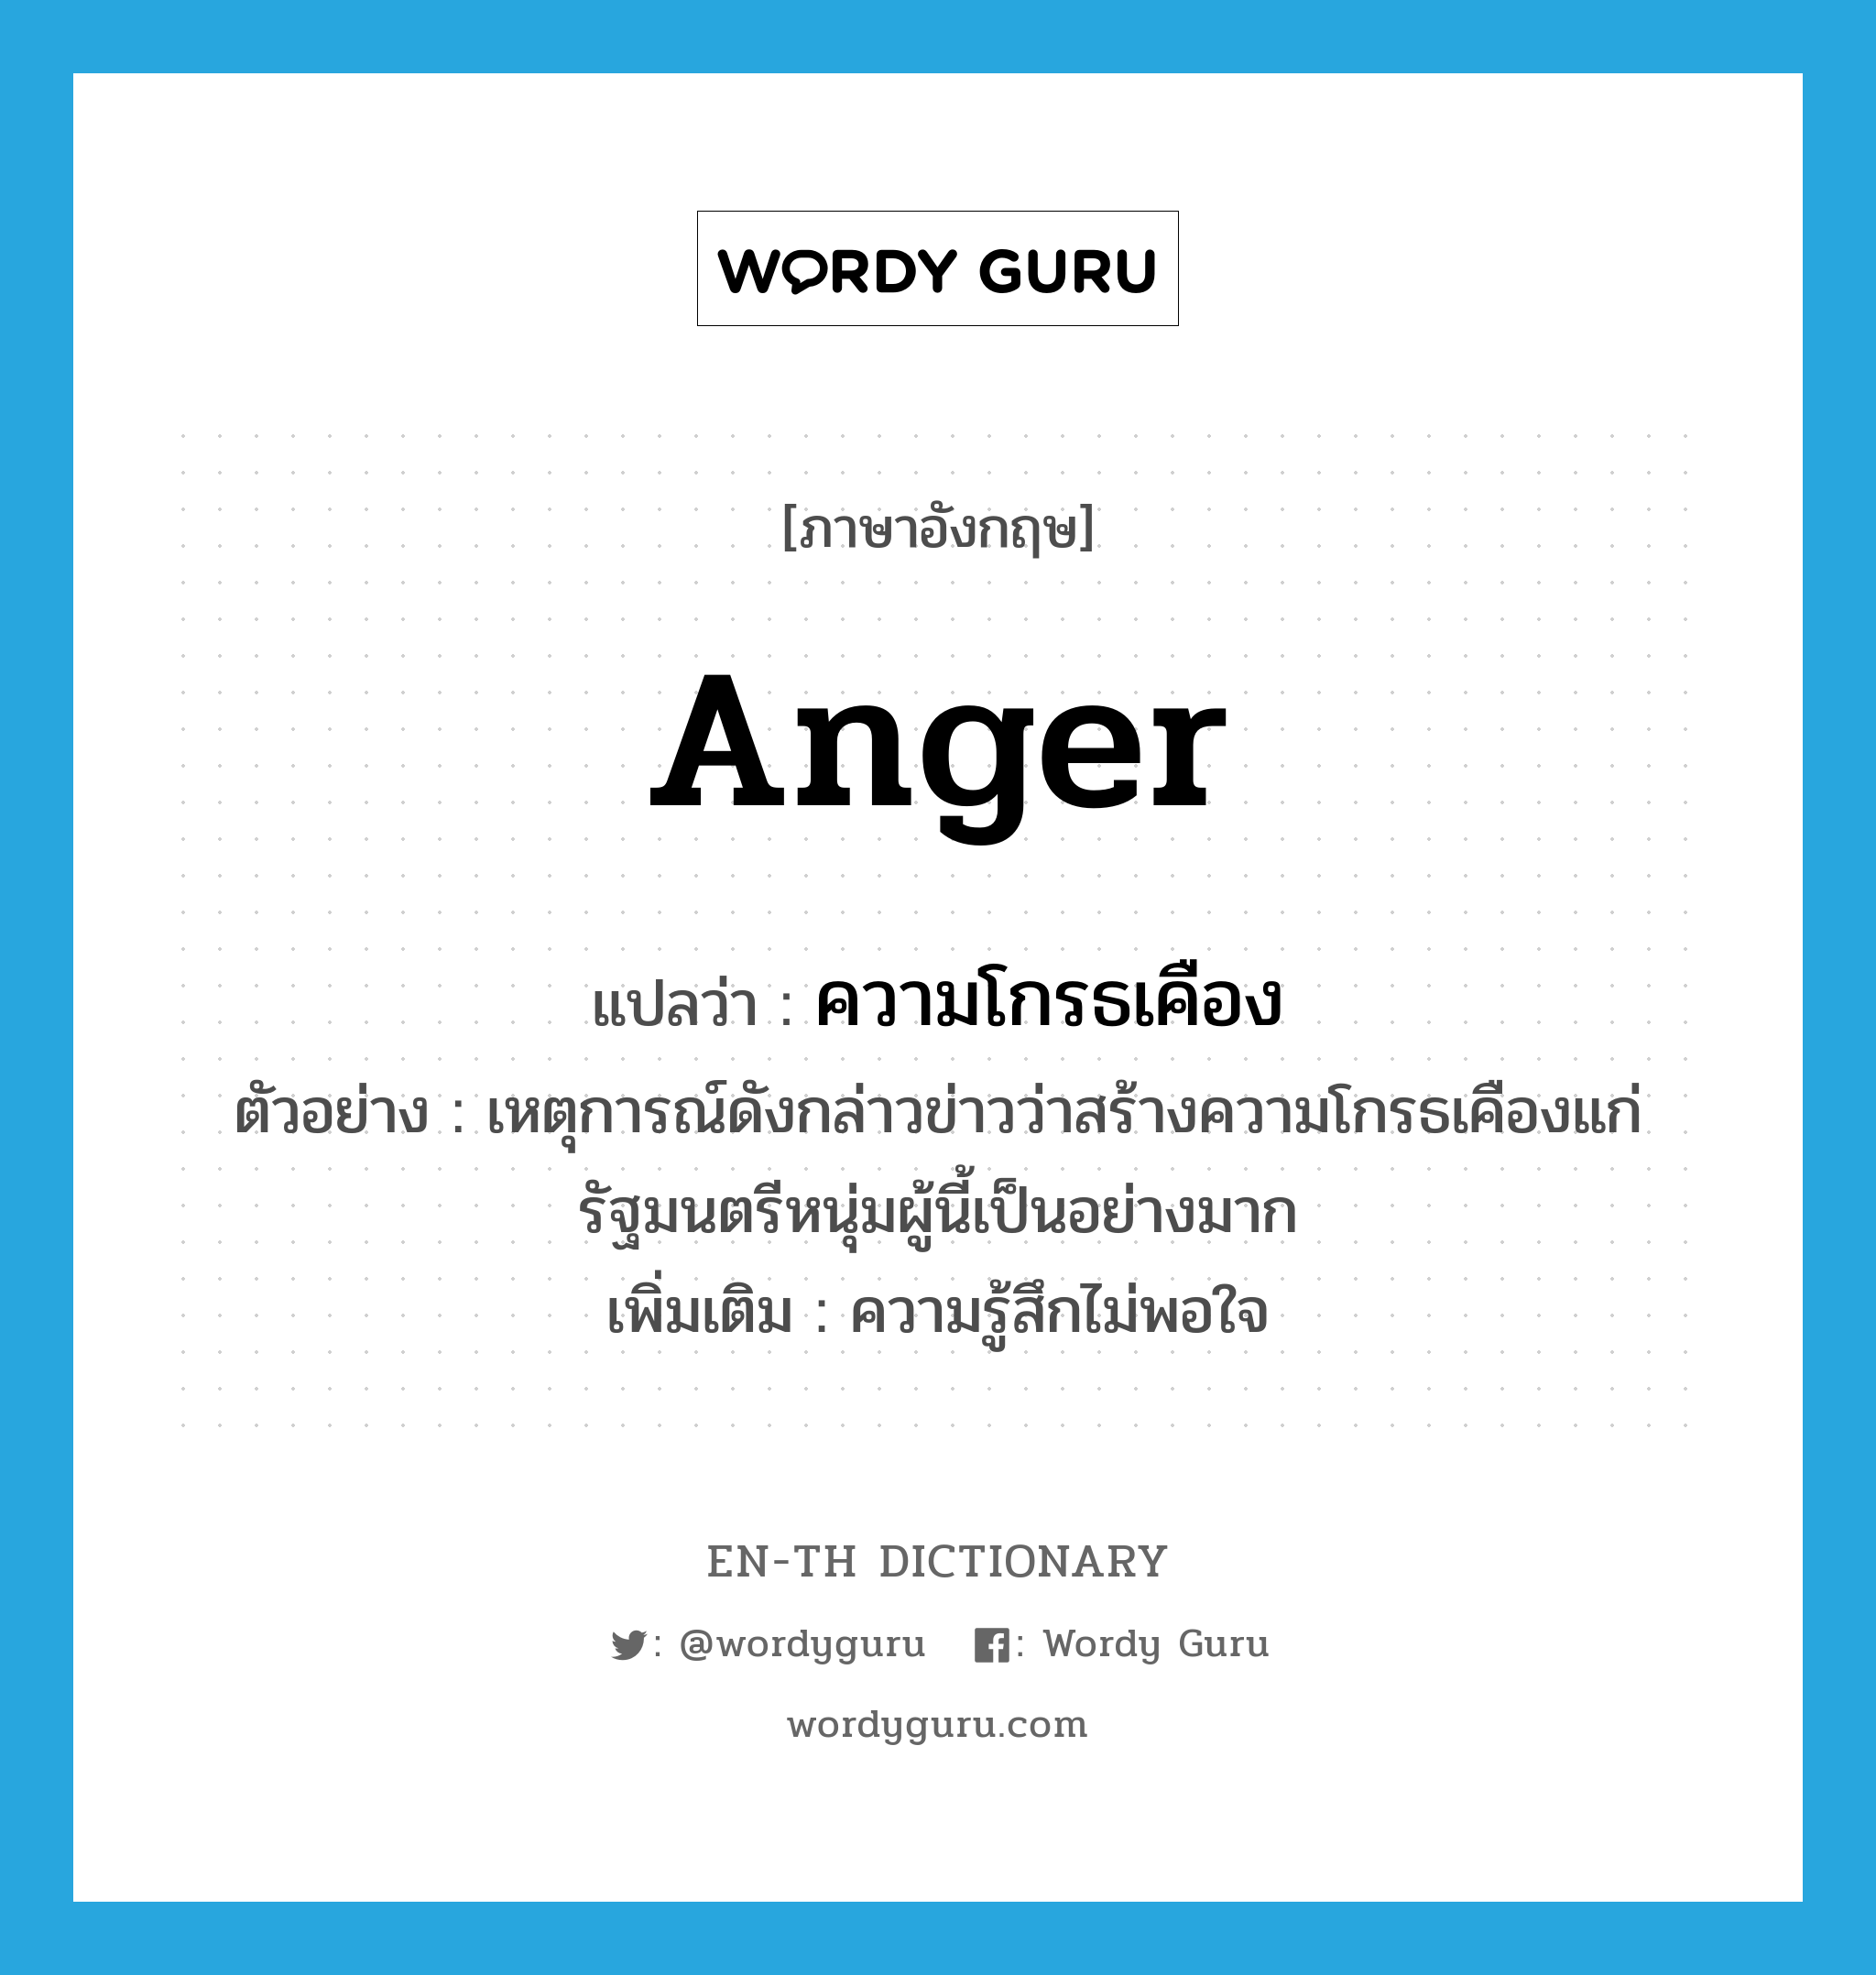 ความโกรธเคือง ภาษาอังกฤษ?, คำศัพท์ภาษาอังกฤษ ความโกรธเคือง แปลว่า anger ประเภท N ตัวอย่าง เหตุการณ์ดังกล่าวข่าวว่าสร้างความโกรธเคืองแก่รัฐมนตรีหนุ่มผู้นี้เป็นอย่างมาก เพิ่มเติม ความรู้สึกไม่พอใจ หมวด N